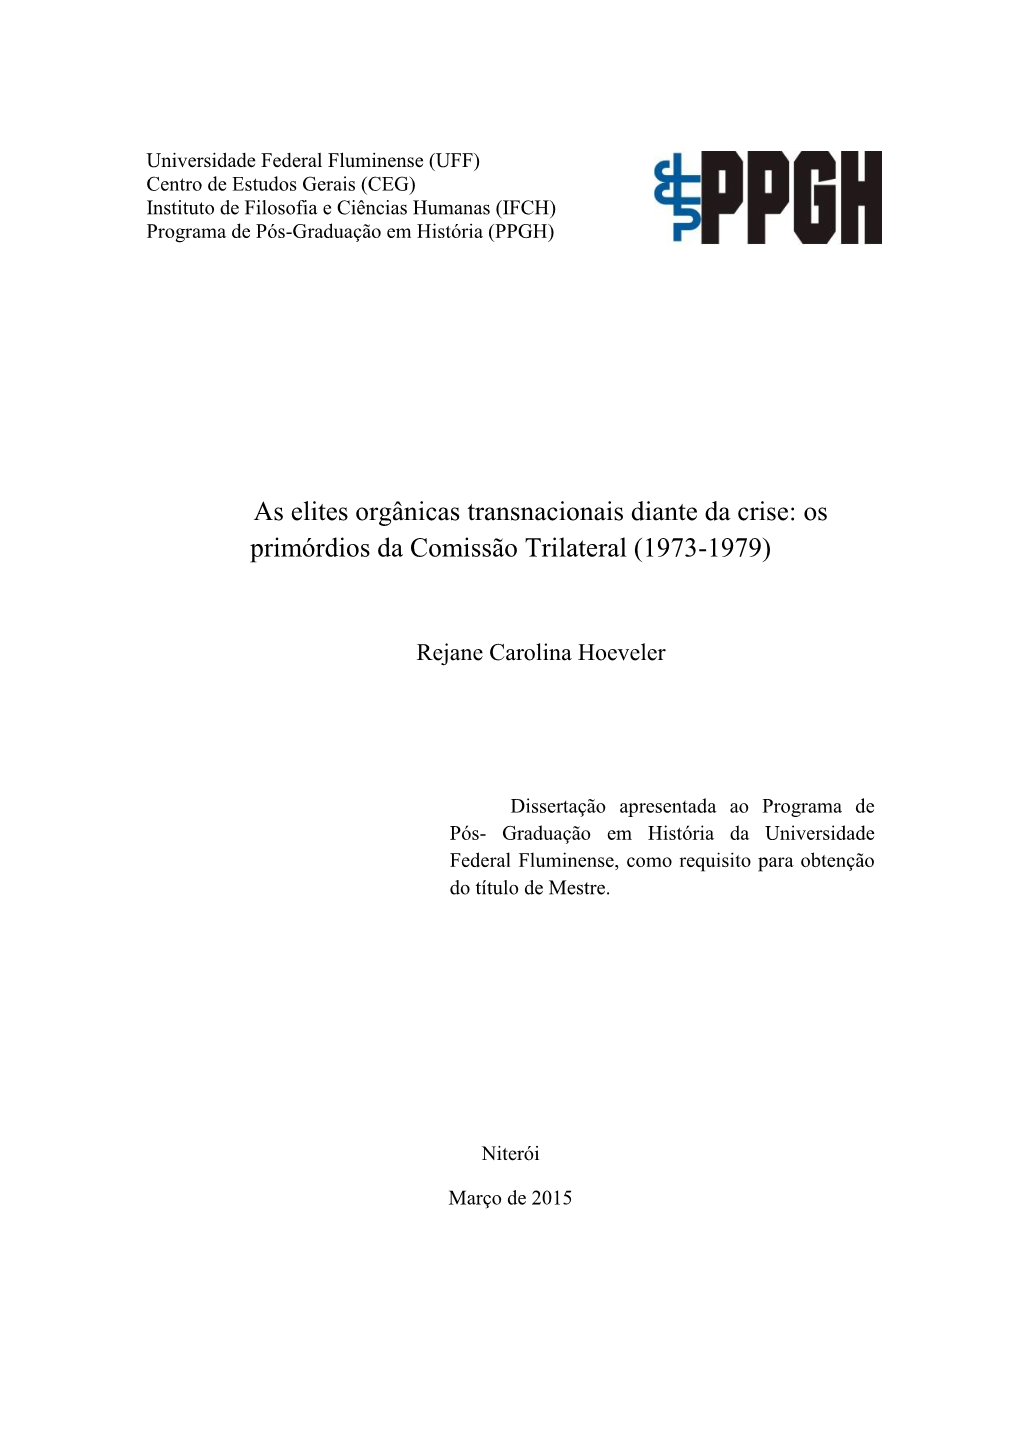 As Elites Orgânicas Transnacionais Diante Da Crise: Os Primórdios Da Comissão Trilateral (1973-1979)